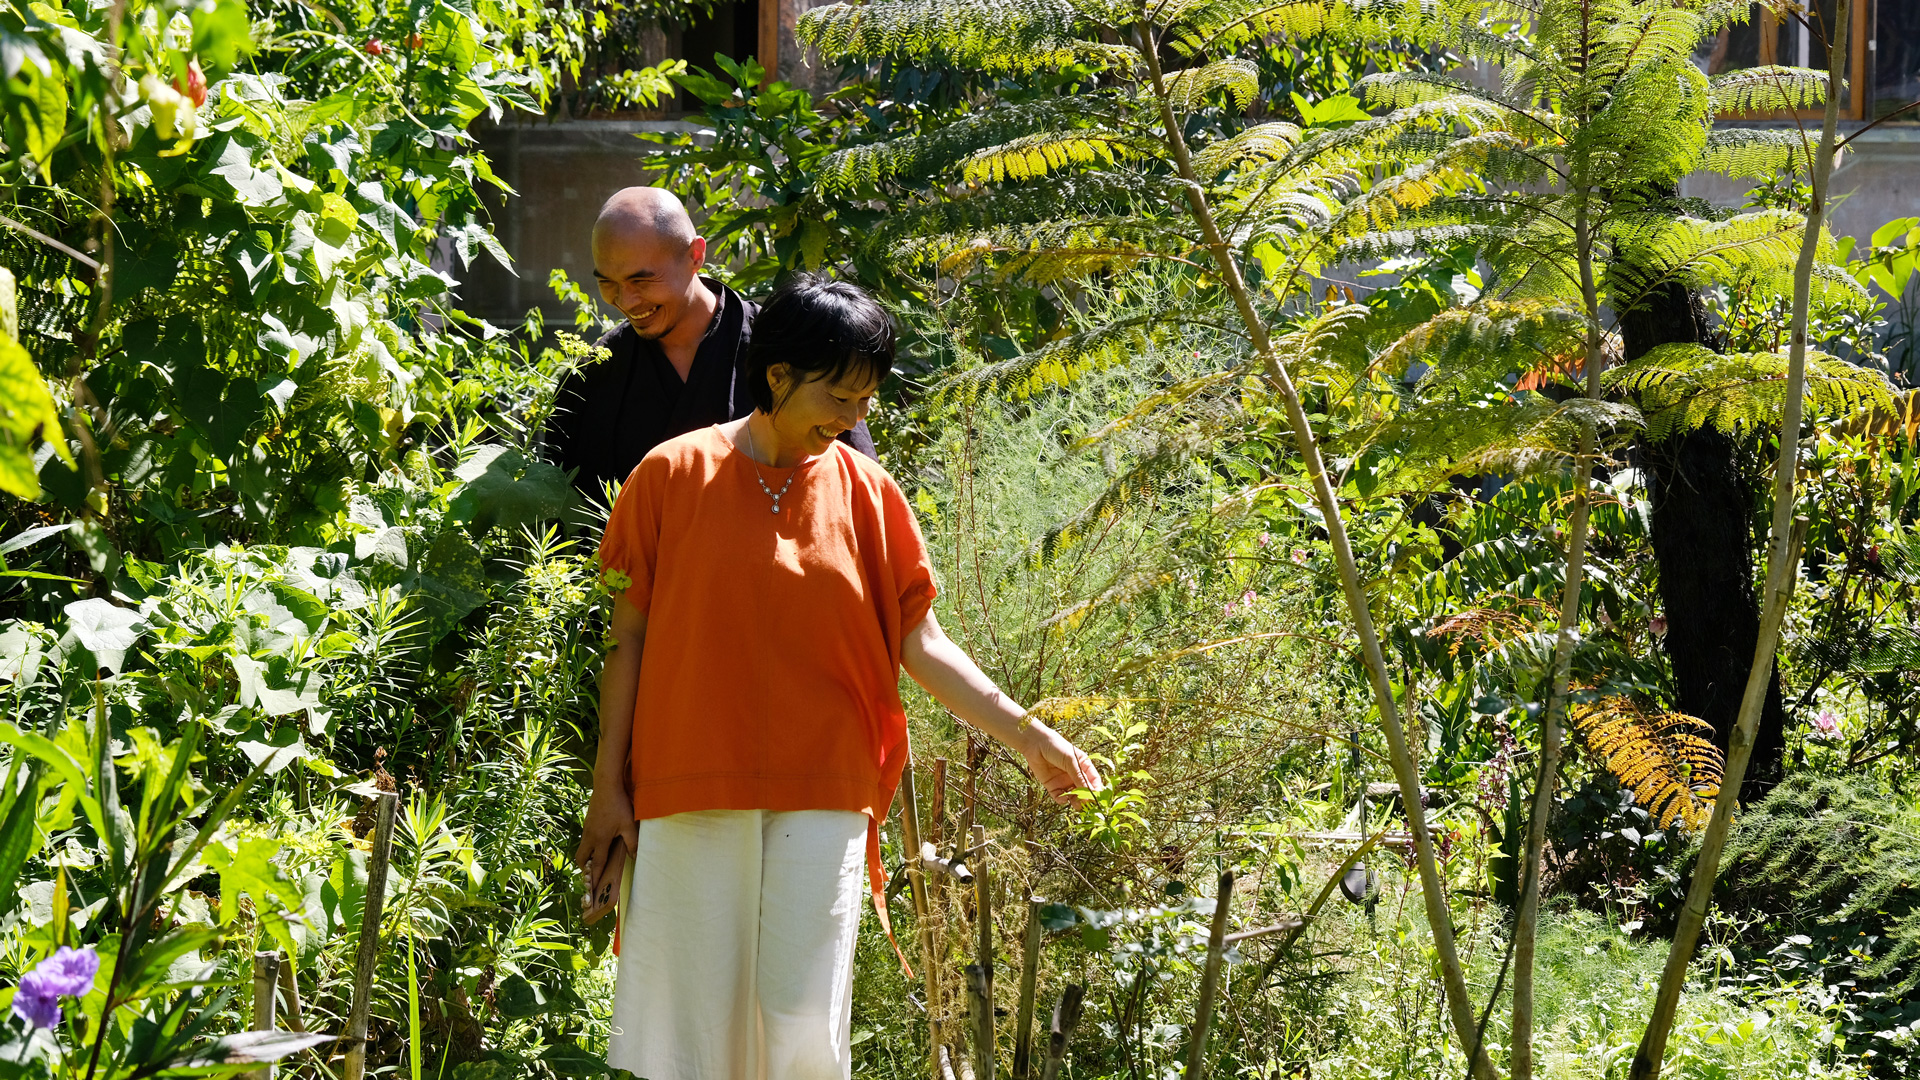 Chị Linh cùng đi thăm những cây phượng tím được trồng 
tại vườn của anh Trần Hữu Tuấn (Phường 4, TP Đà Lạt)